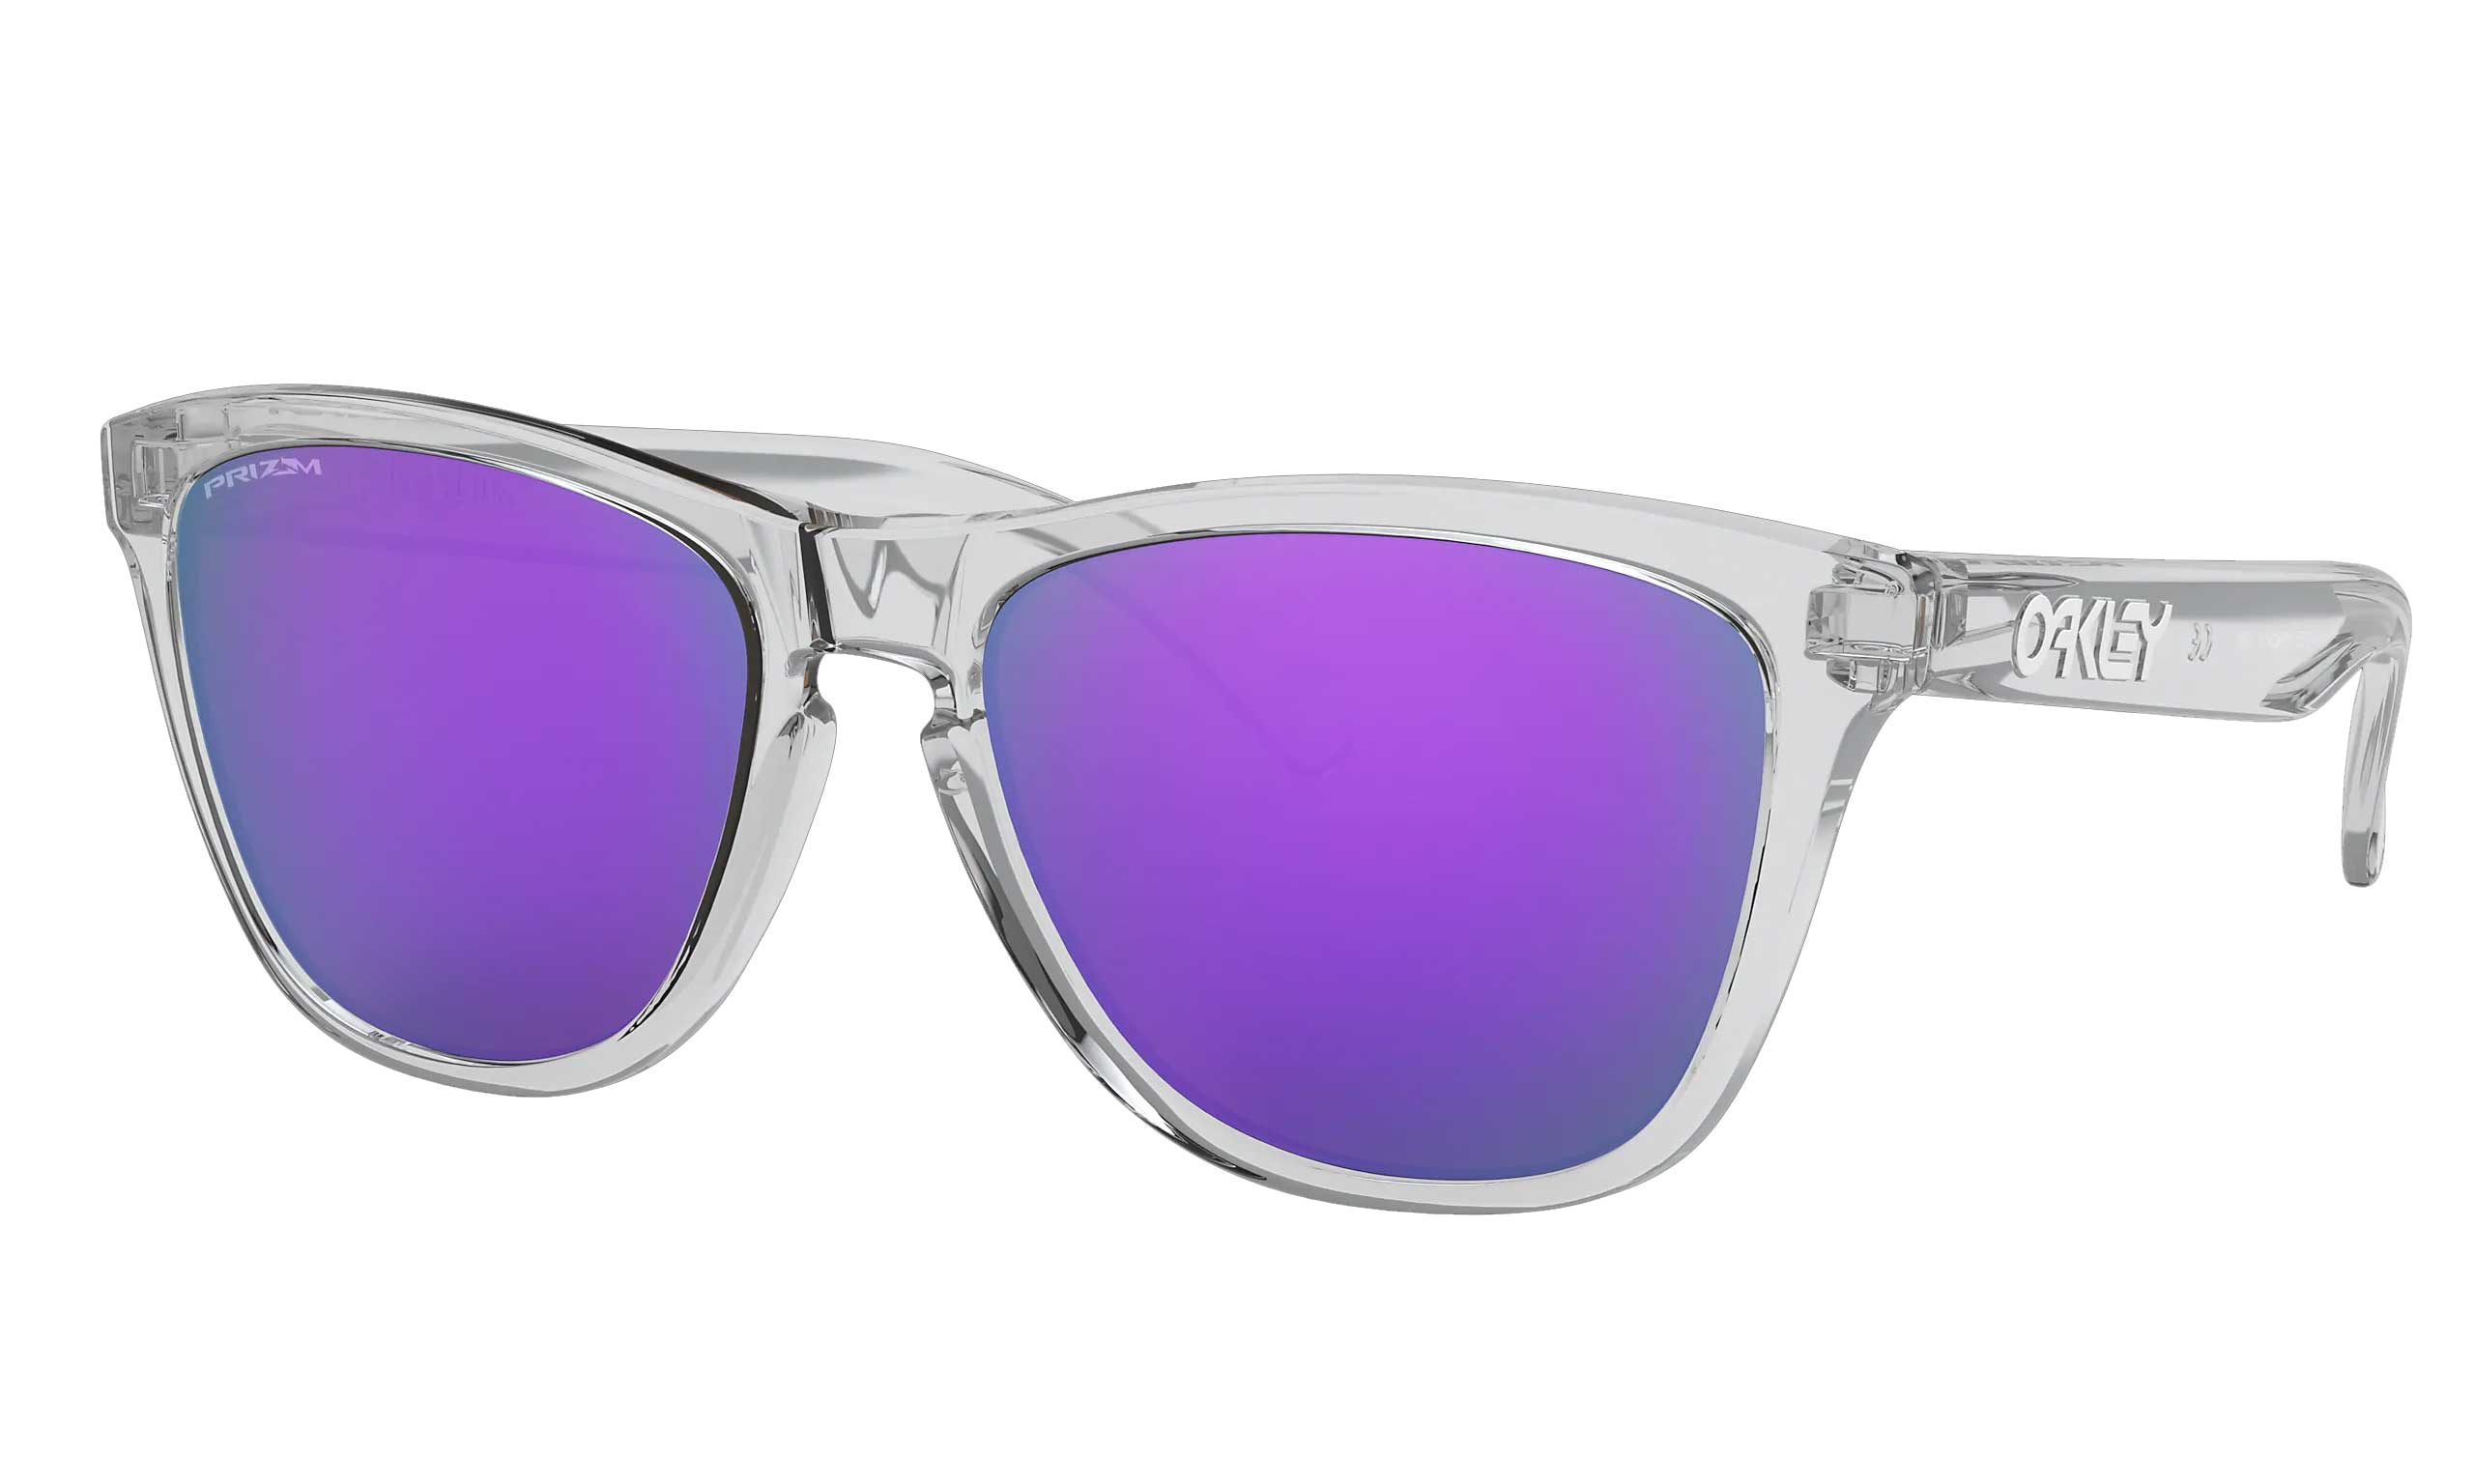 OAKLEY Frogskins Sunglasses - Polished Clear - Prizm Violet Lens – A Farley